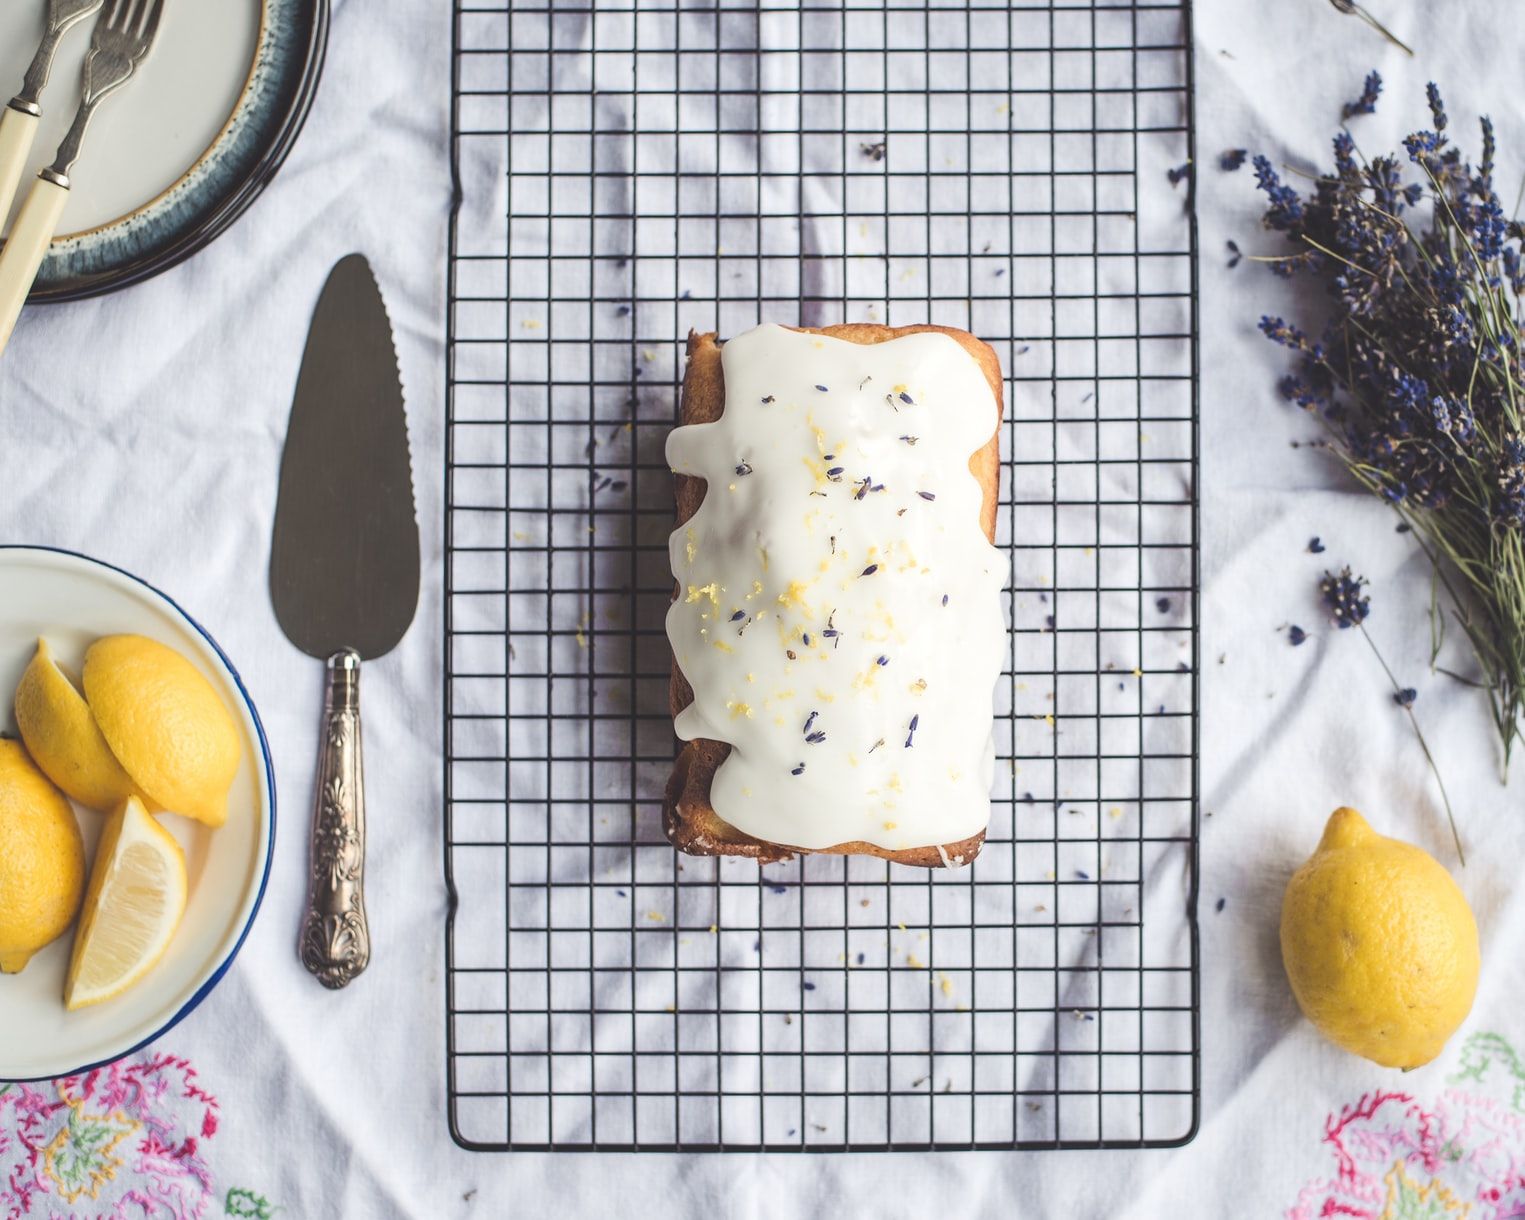 Lavender and Lemon Loaf Cake